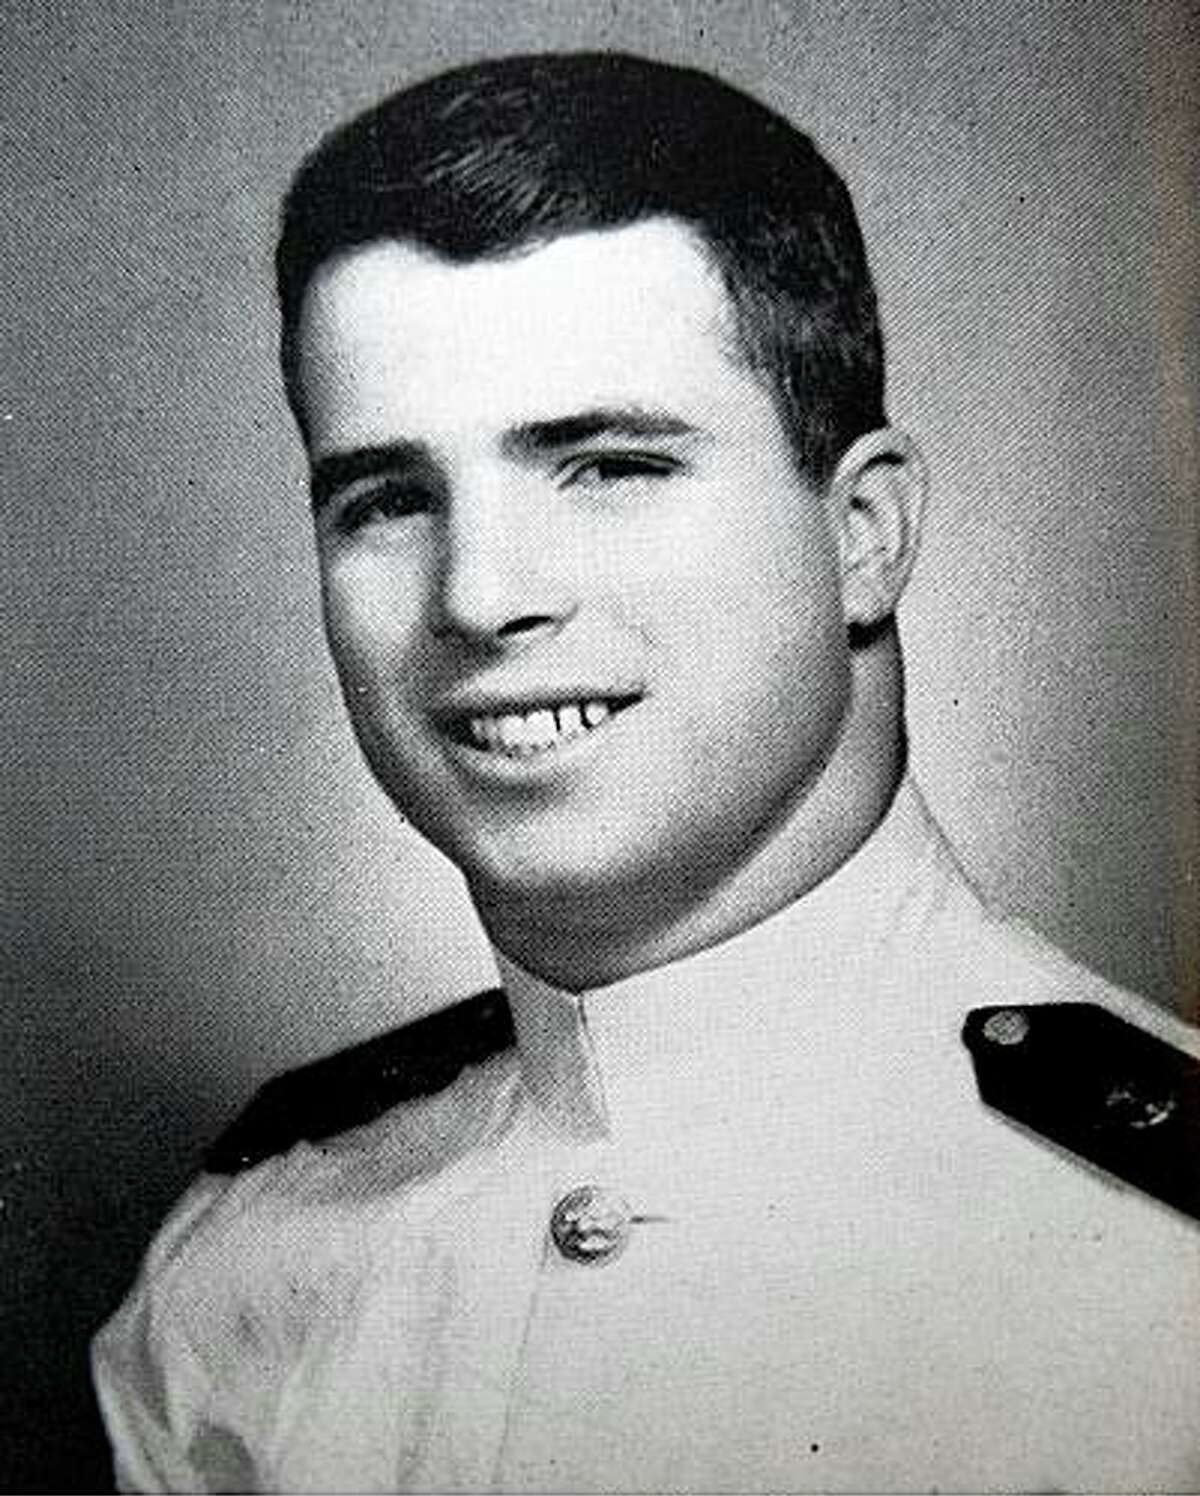 Официальный портрет молодого темноволосого мужчины в белой военно-морской форме